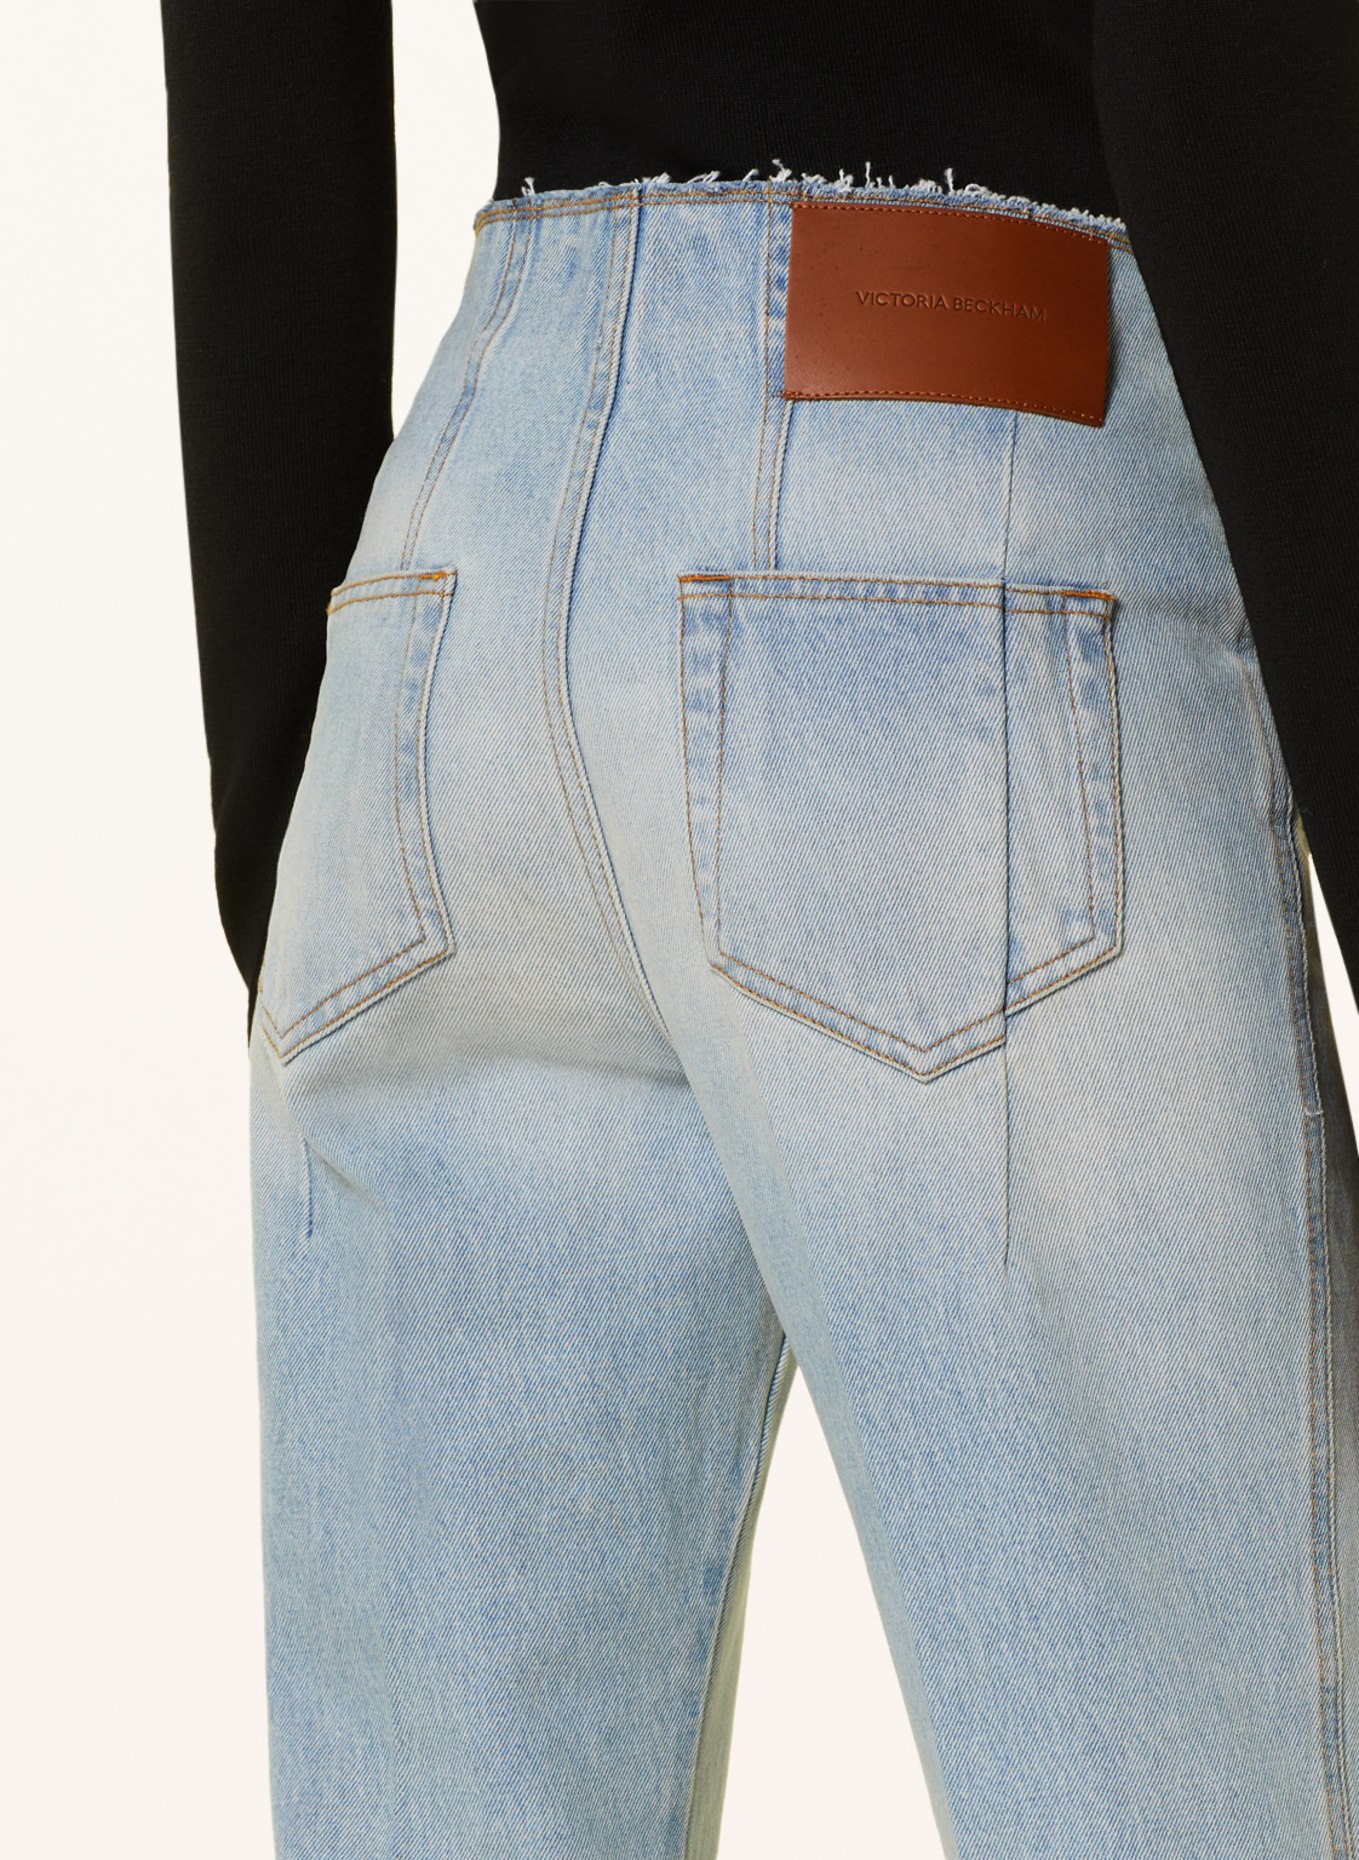 VICTORIABECKHAM Flared jeans, Color: 8439 LIGHT / MID VINTAGE WASH (Image 5)